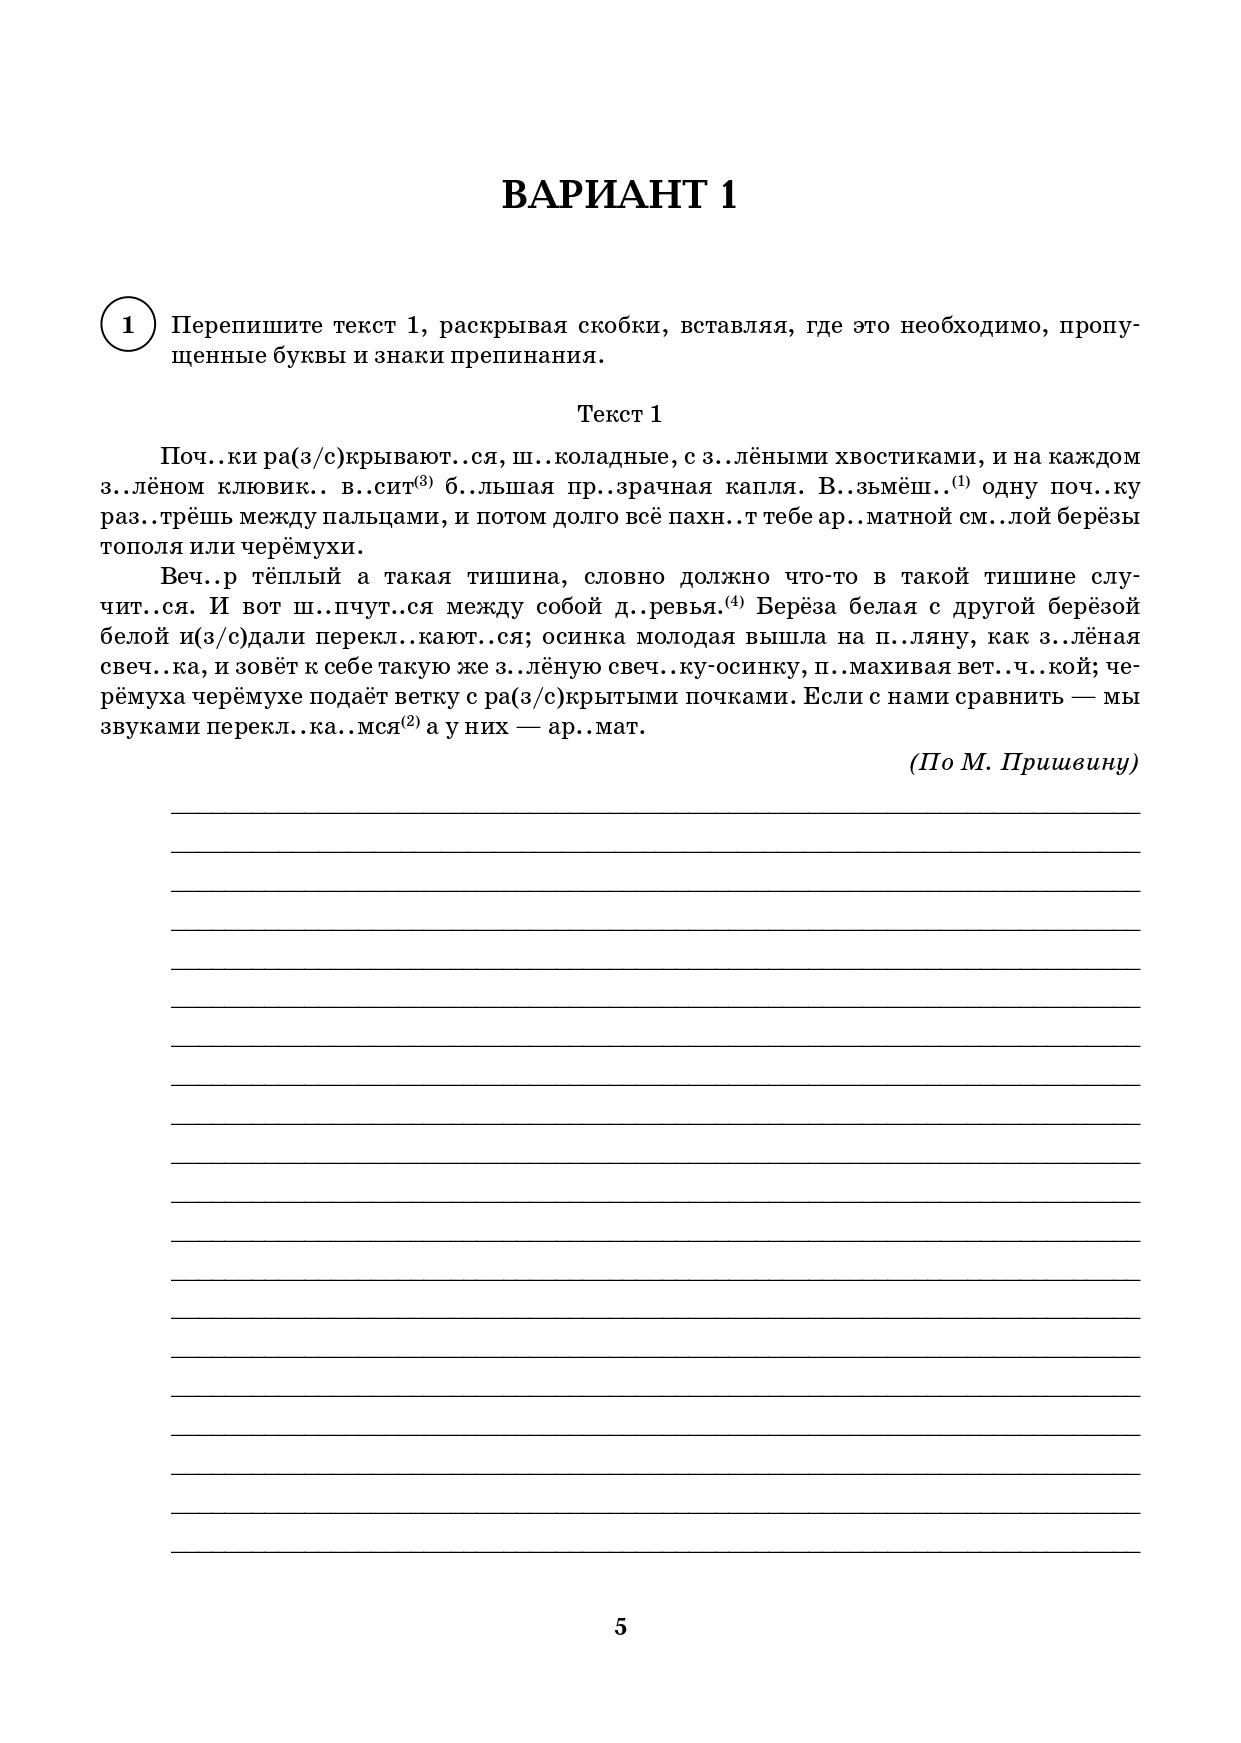 Русский язык. 5 класс. ВПР. 10 тренировочных вариантов. 3-е изд.